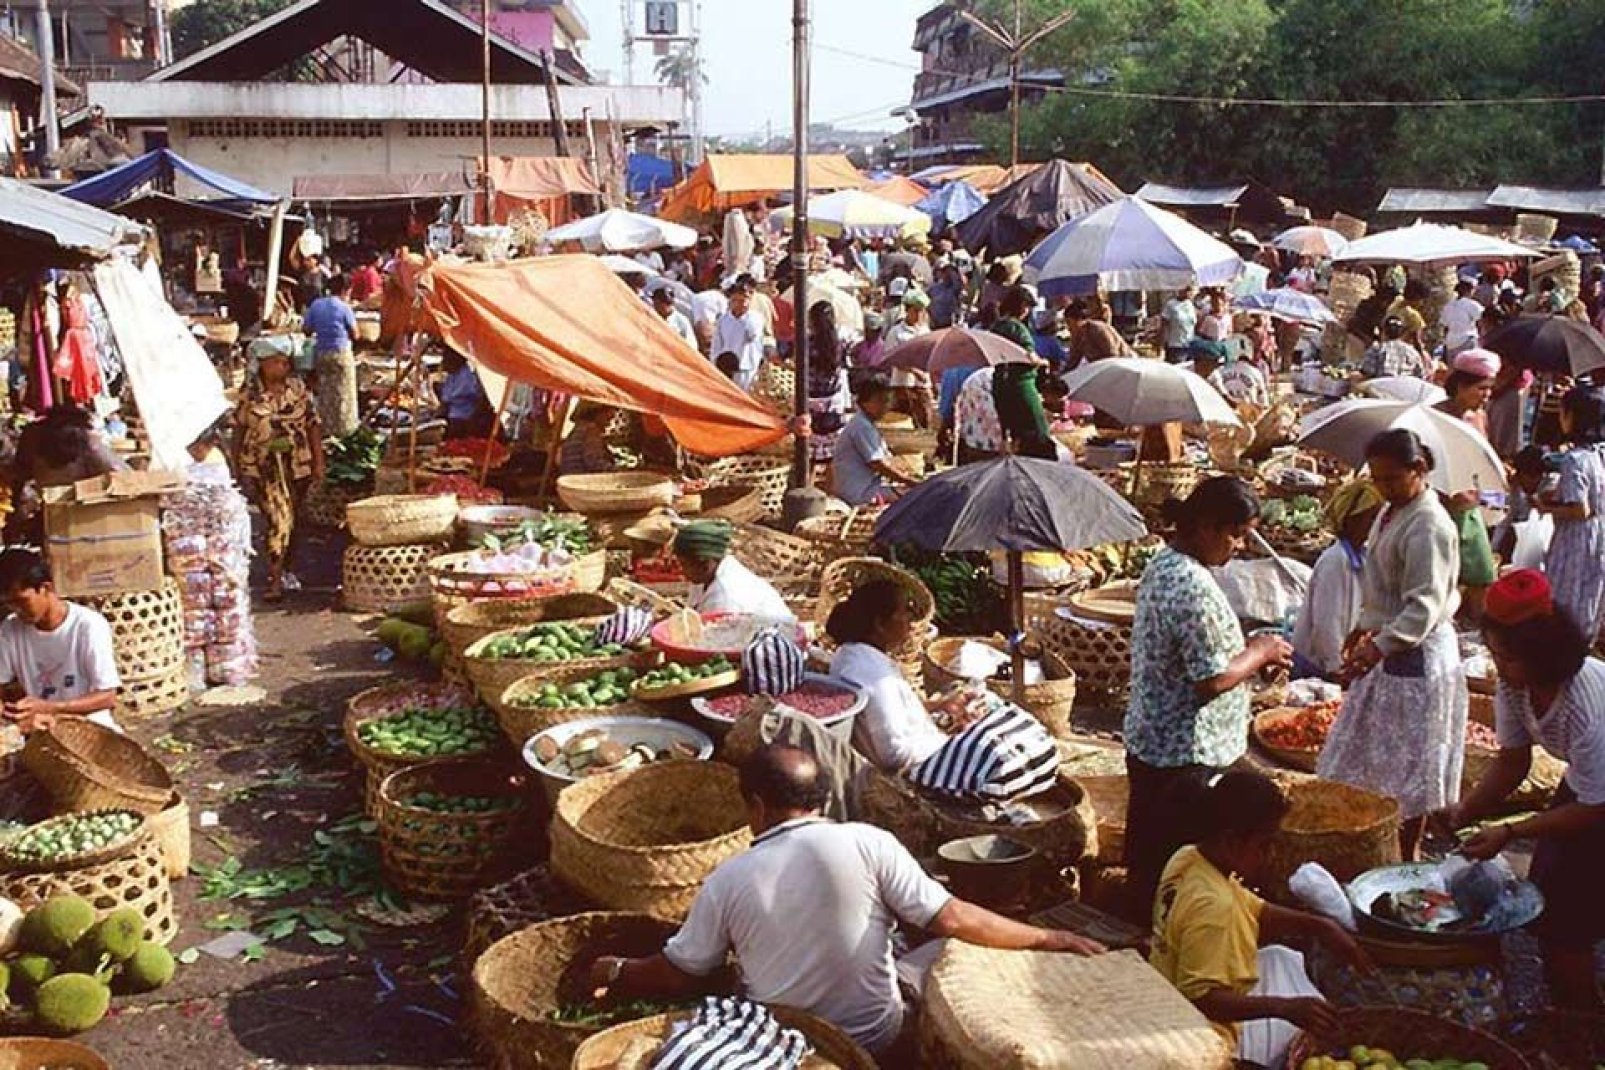 Batik, mobili in vimini, oggetti scolpiti... il pasar è una parte fondamentale della vita locale.